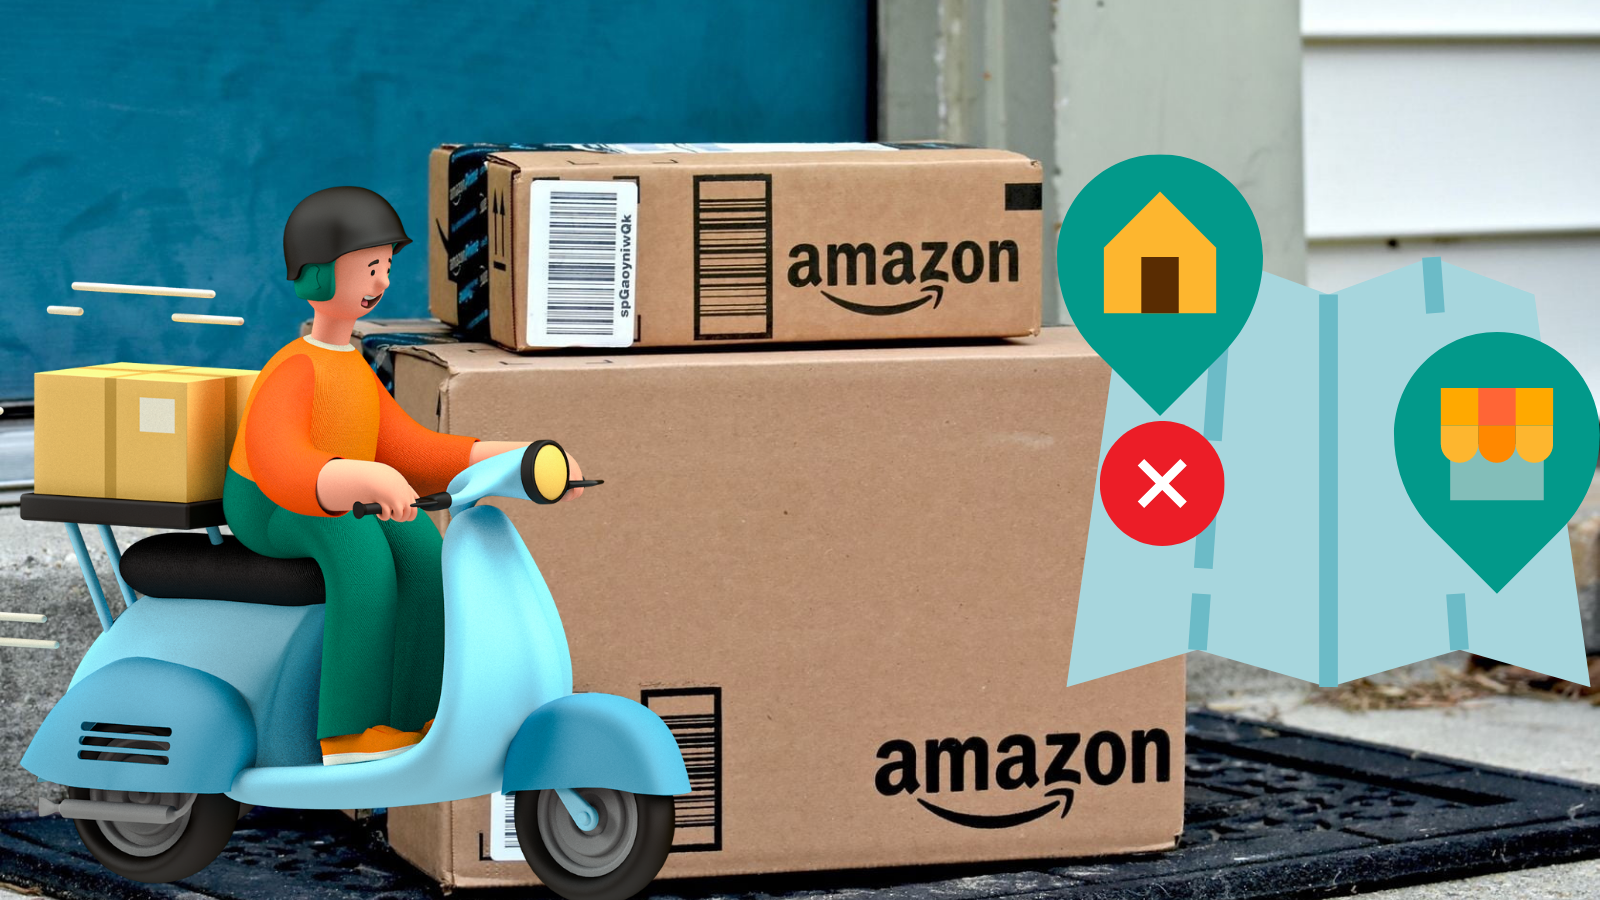 Amazon incorrect color - wide 4